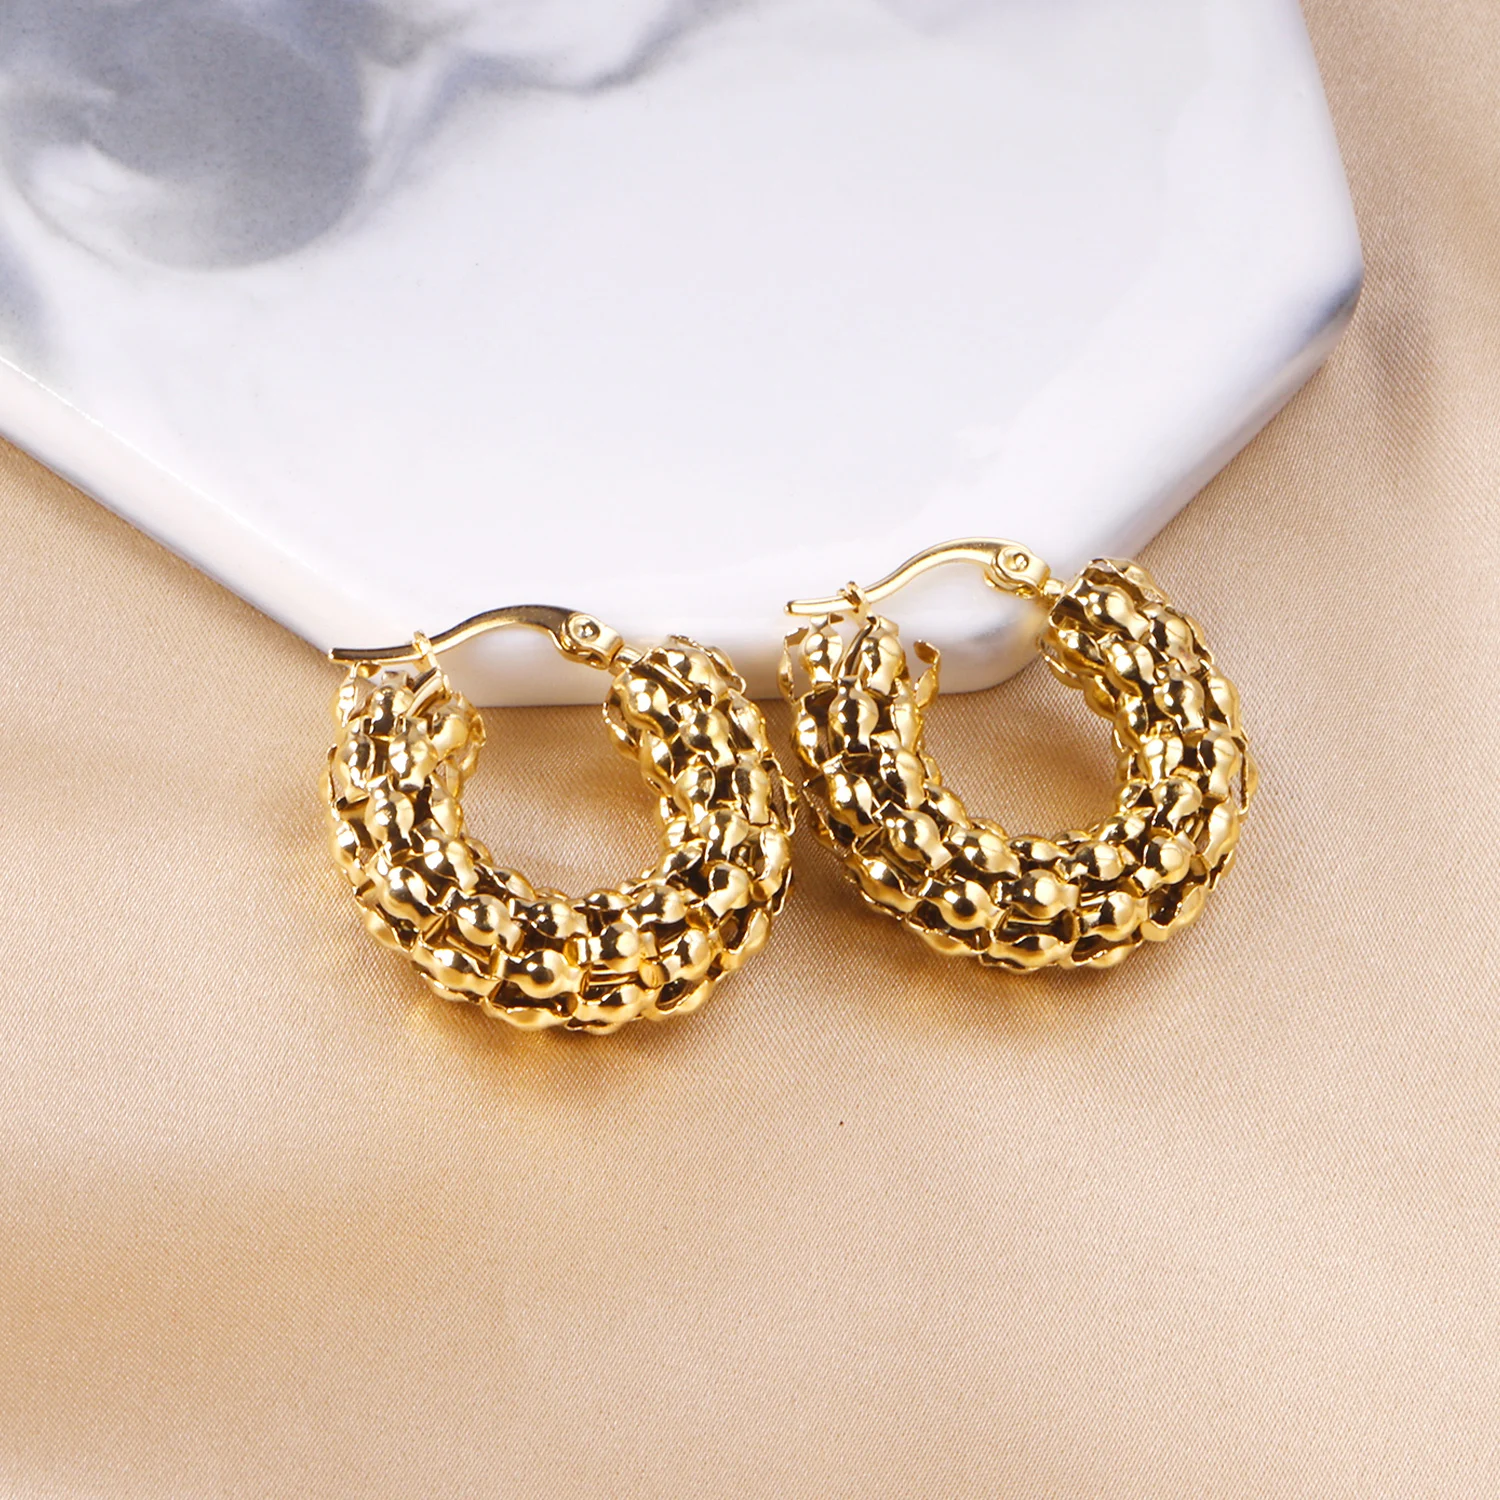 Gold Jewelry Earring Type 18k Big Steel Hoop Earrings For Women - Buy ...